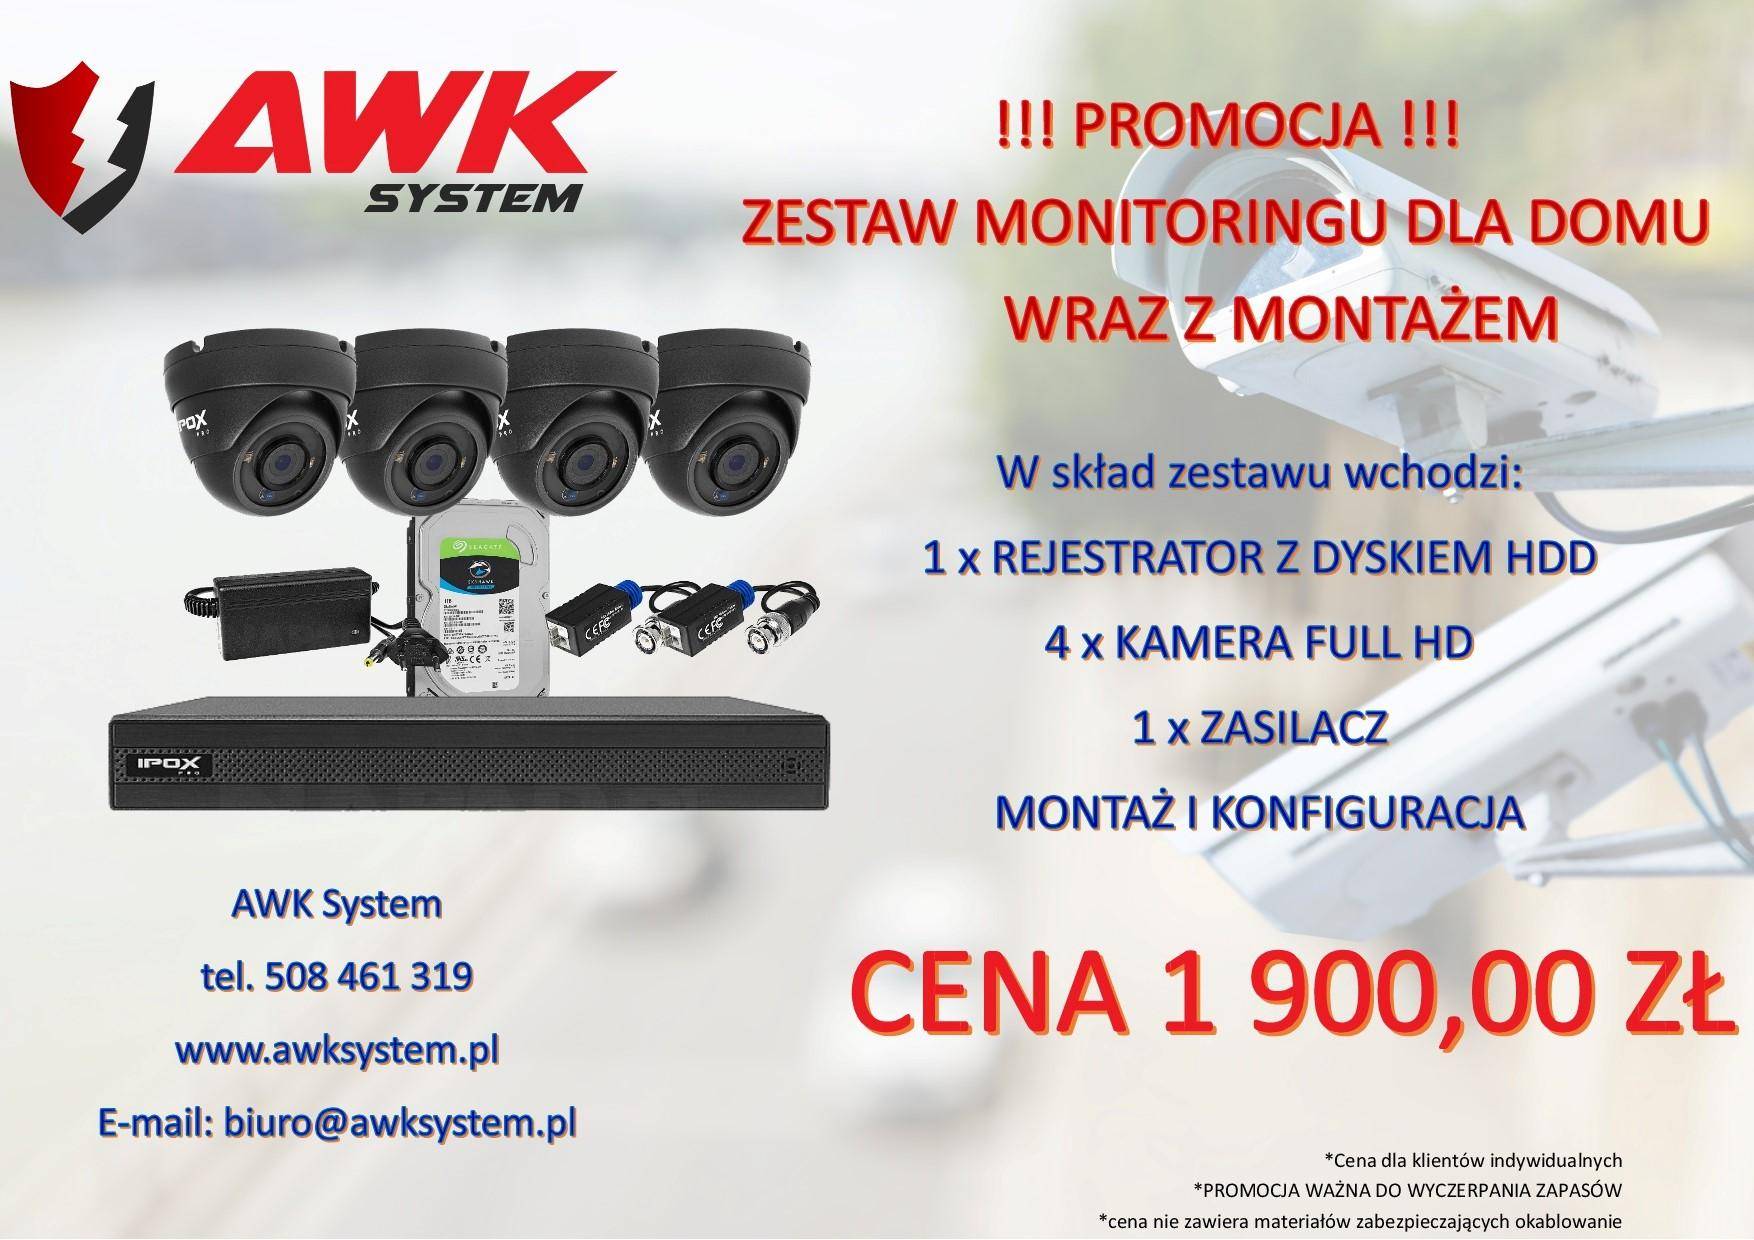 AWK System - Promocja